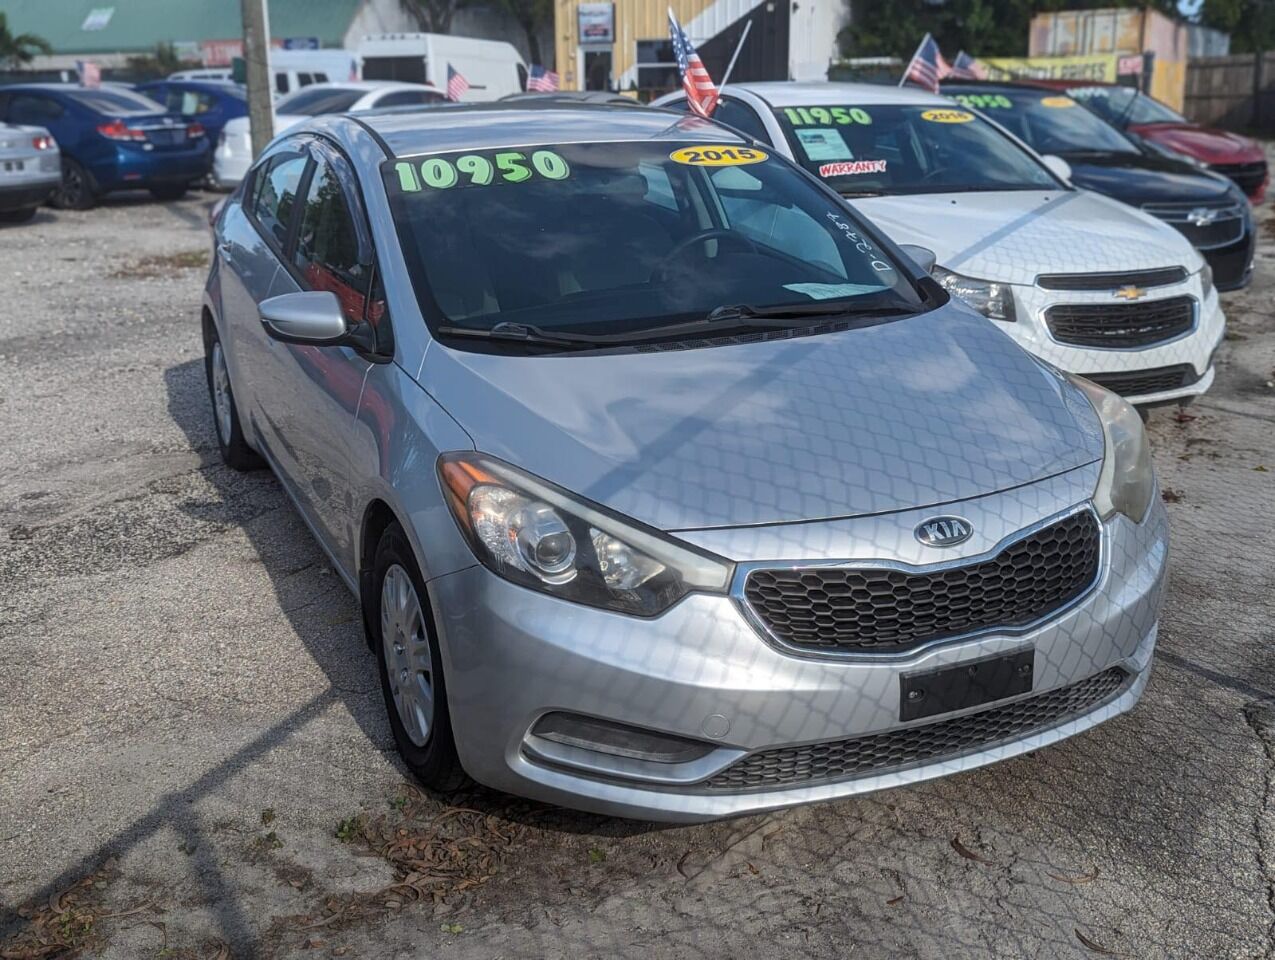 2015 KIA Forte Sedan - $10,950